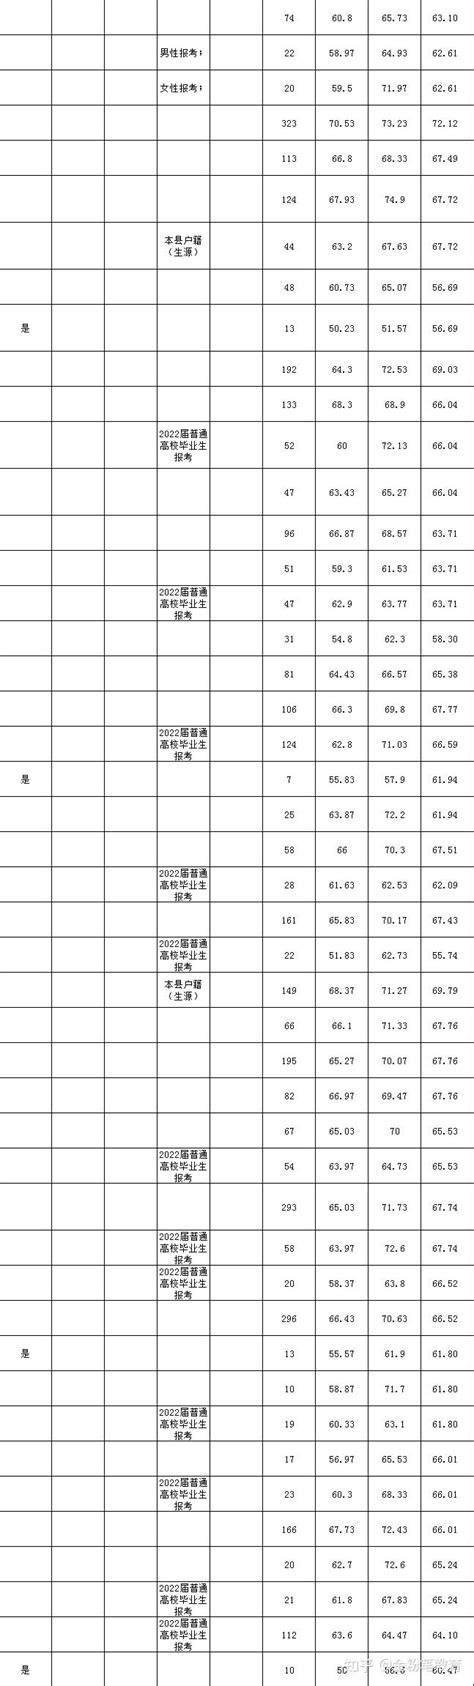 贵州2019公务员省考总成绩排名和体检人员名单公布_职位